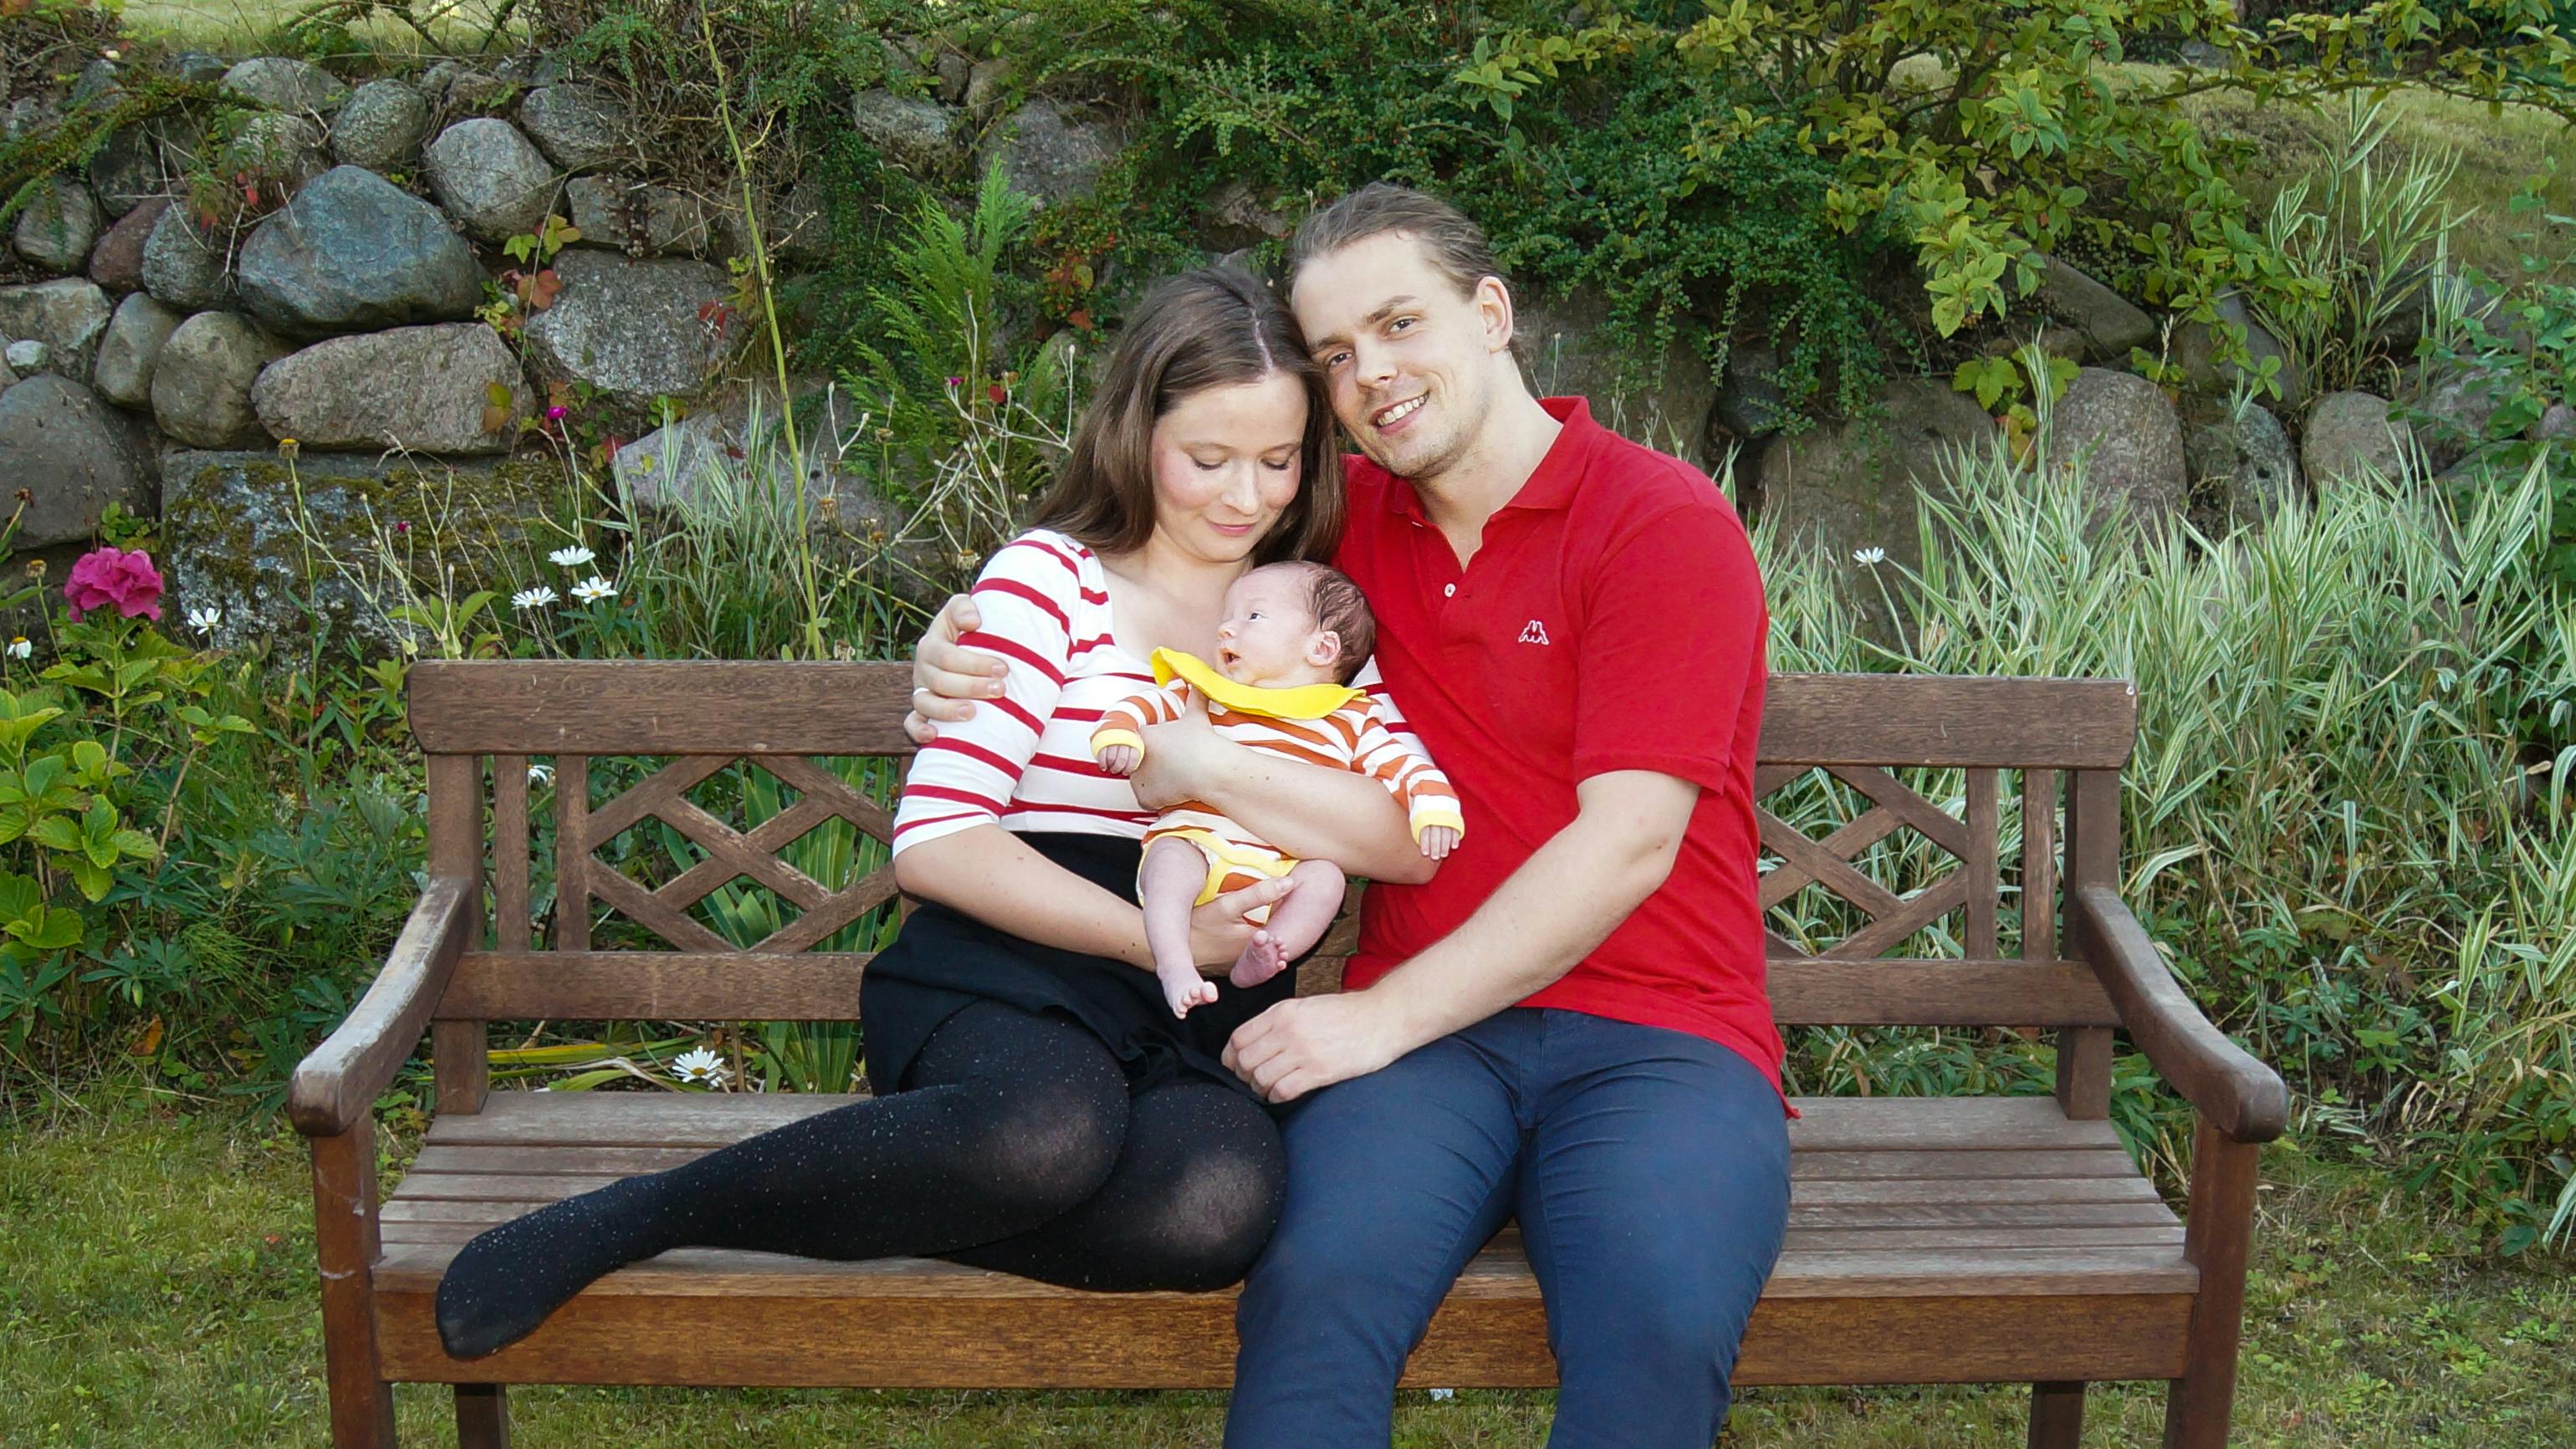 Lizandra og Daniel Pultz Larsen, der var med i sommerkonkurrencen Danmarks bedste kæreste i Familie Journal, er blevet forældre til lille Gabriell Andreas Pultz Larsen.